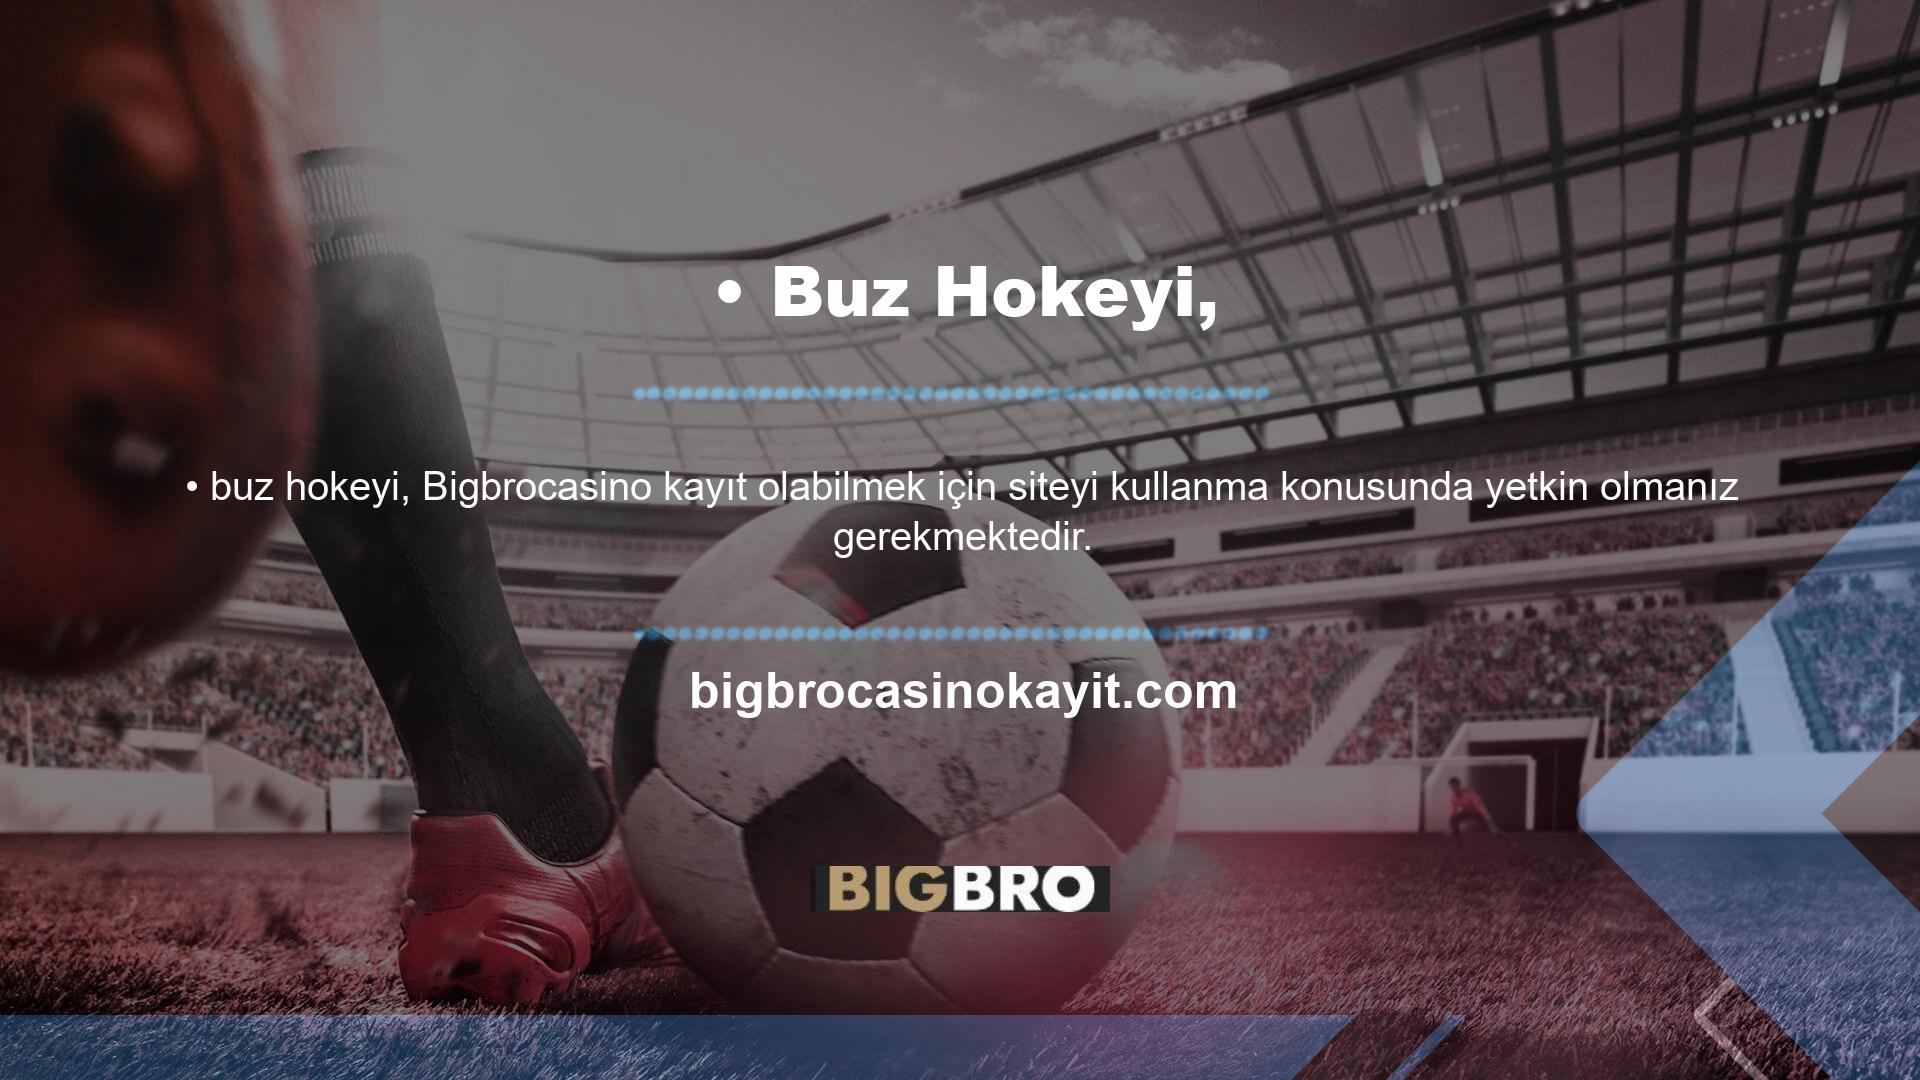 Bigbrocasino web sitesi, çoğu deneyimli kullanıcının olumlu geri bildirimlerini paylaştığı, bu ülkelerden insanların rahatlığı ve mükemmel hizmeti övdüğü derinlemesine spor bahisleri sunmaktadır